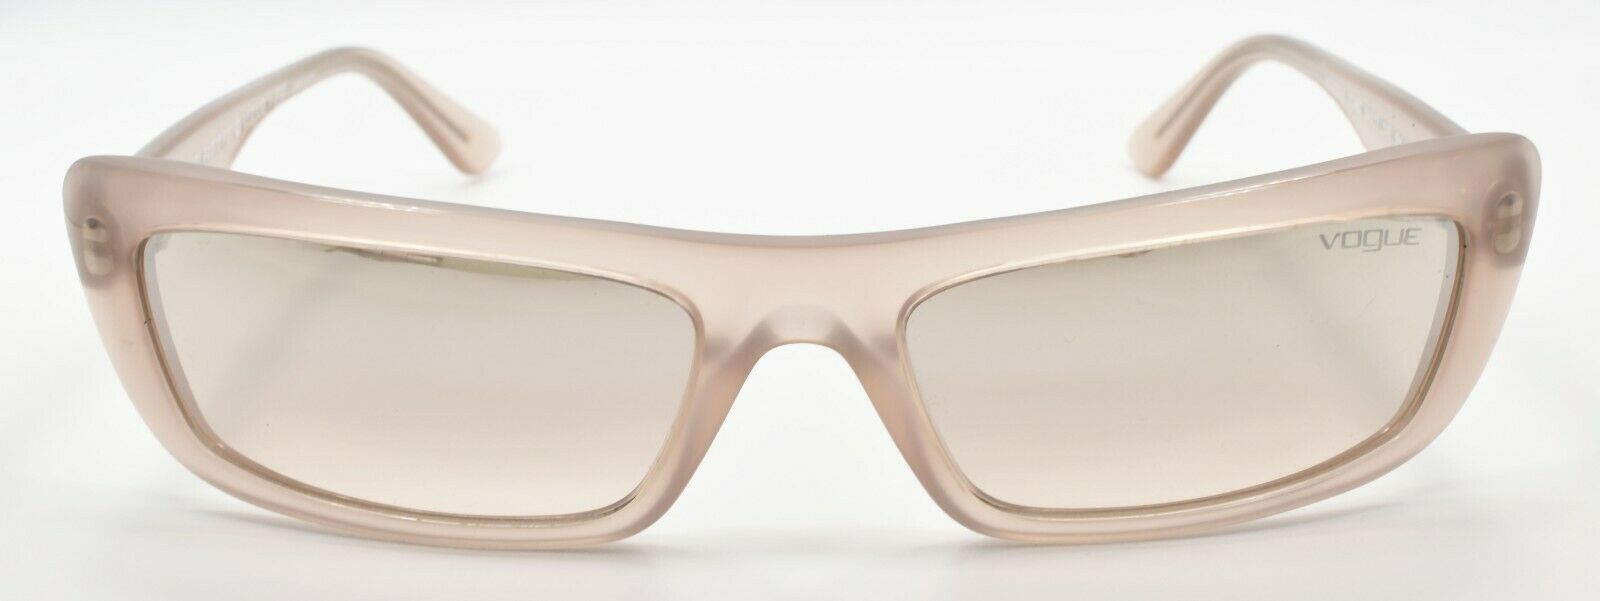 2-Vogue x Gigi Hadid VO5283S 27248Z Women's Sunglasses Beige / Mirror Silver-8056597061988-IKSpecs